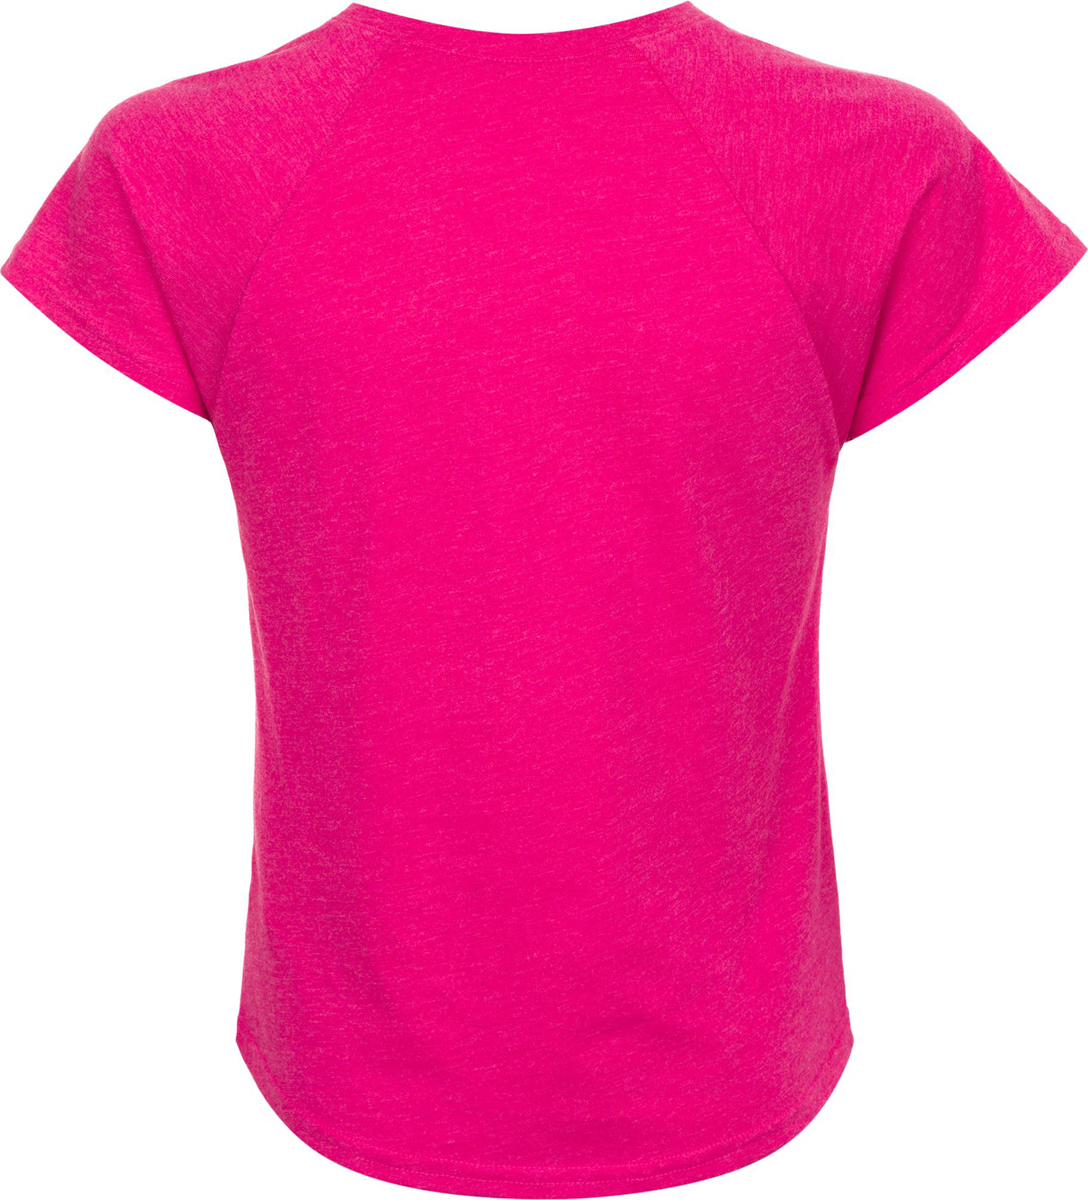 Розовая футболка для девочки. Футболка Termit. Футболка Termit Style code 103731. Майка Rainbow Termit женская красная. Розовая футболка Termit.